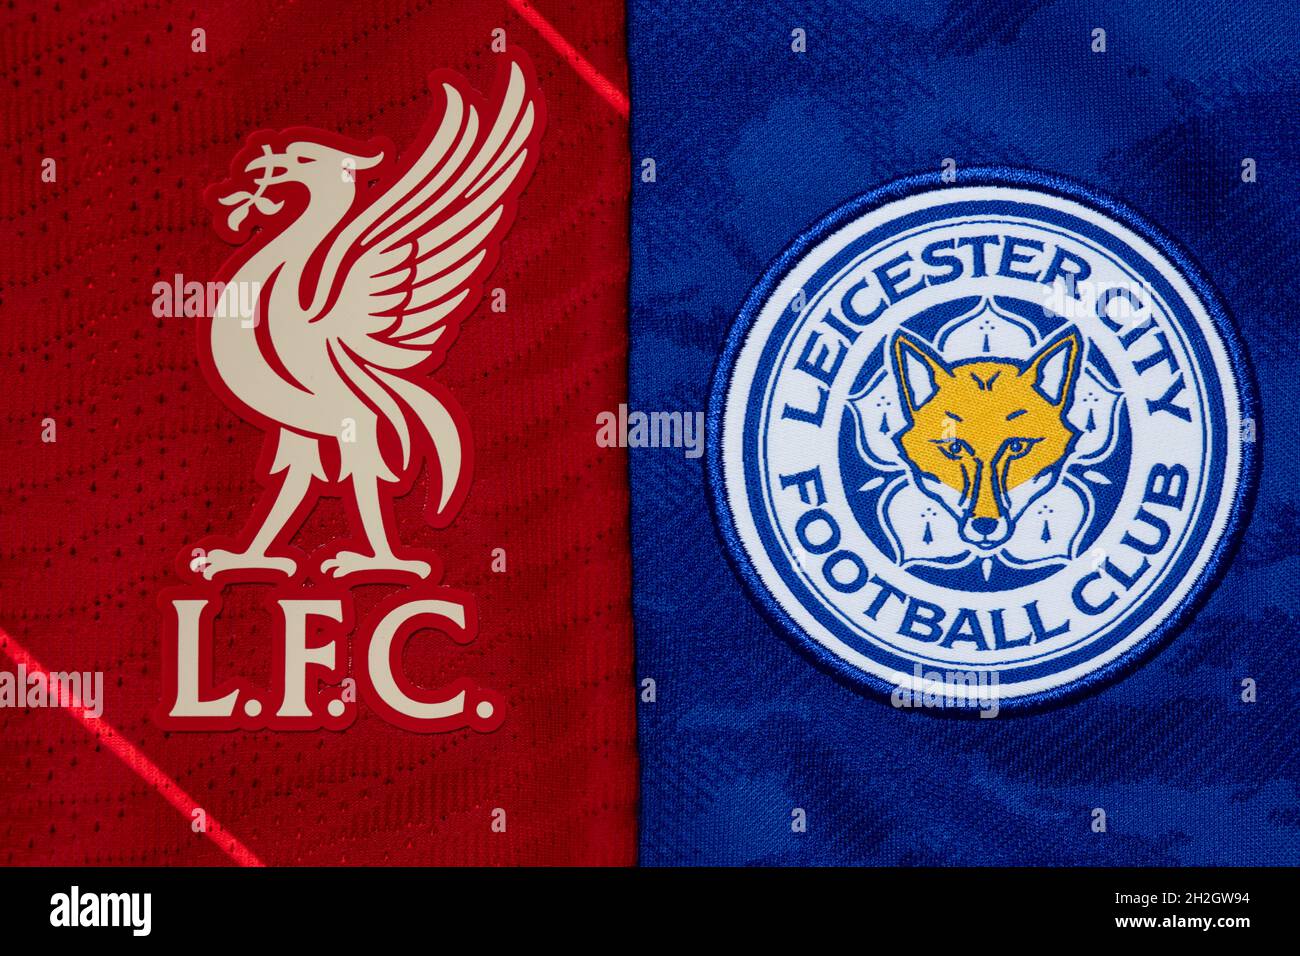 Primo piano del Liverpool & Leicester club crest. Foto Stock